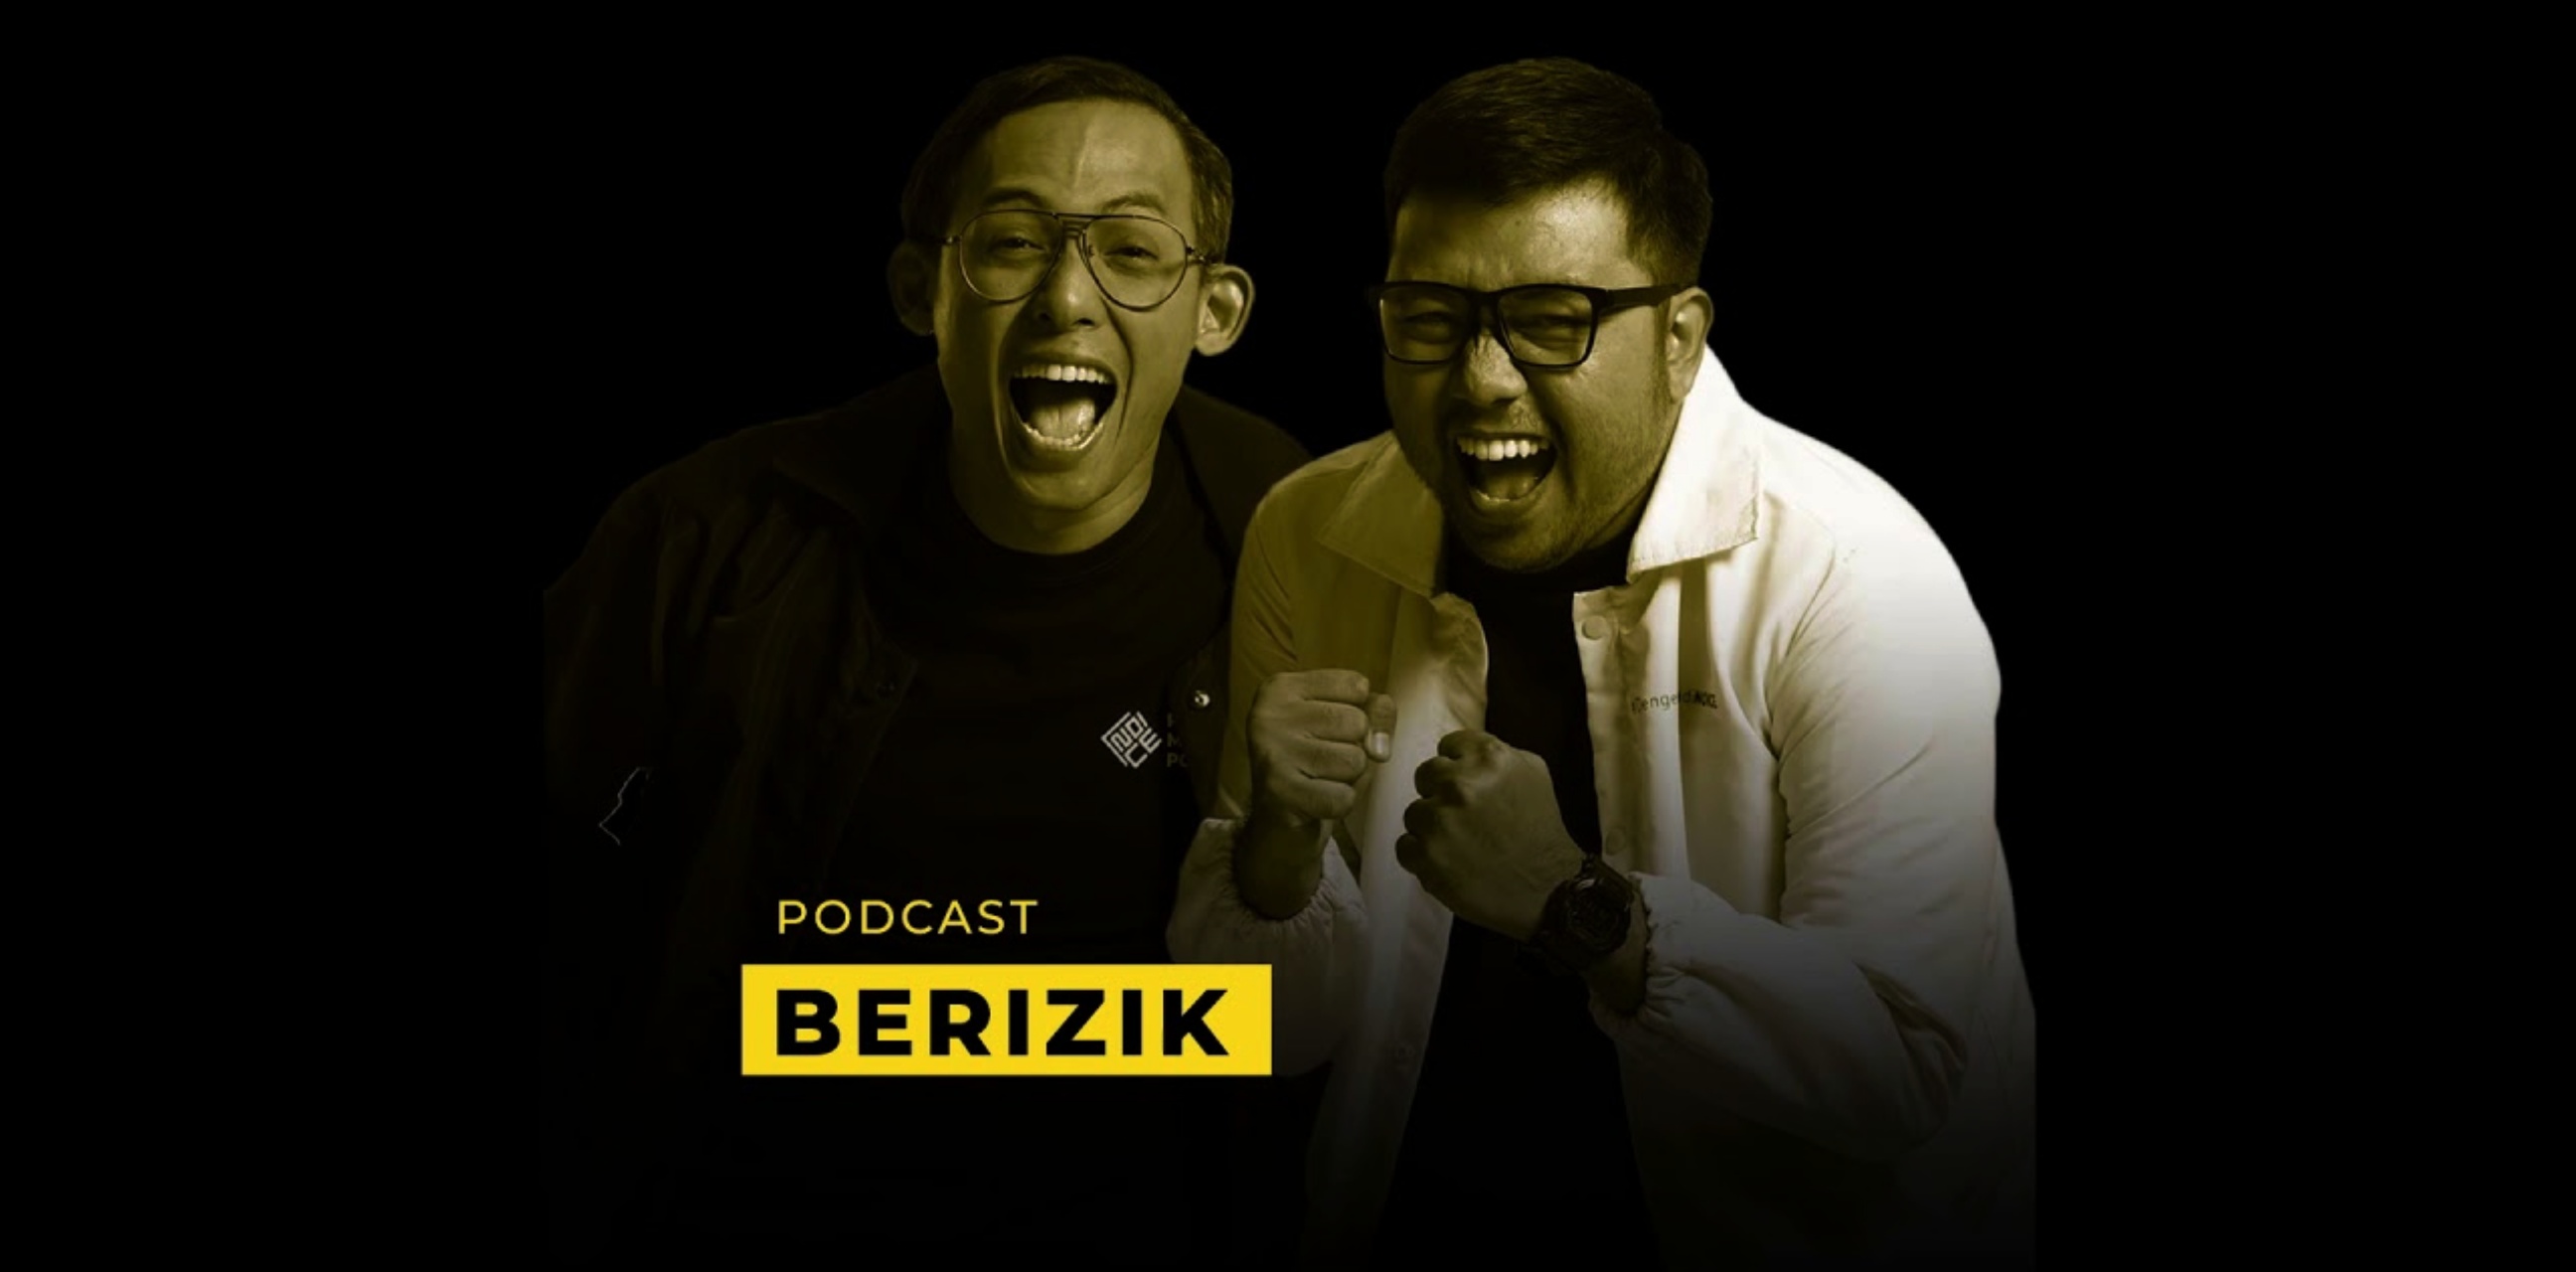 Ngobrol seru & berbagi cerita unik ala para musisi di podcast Berizik